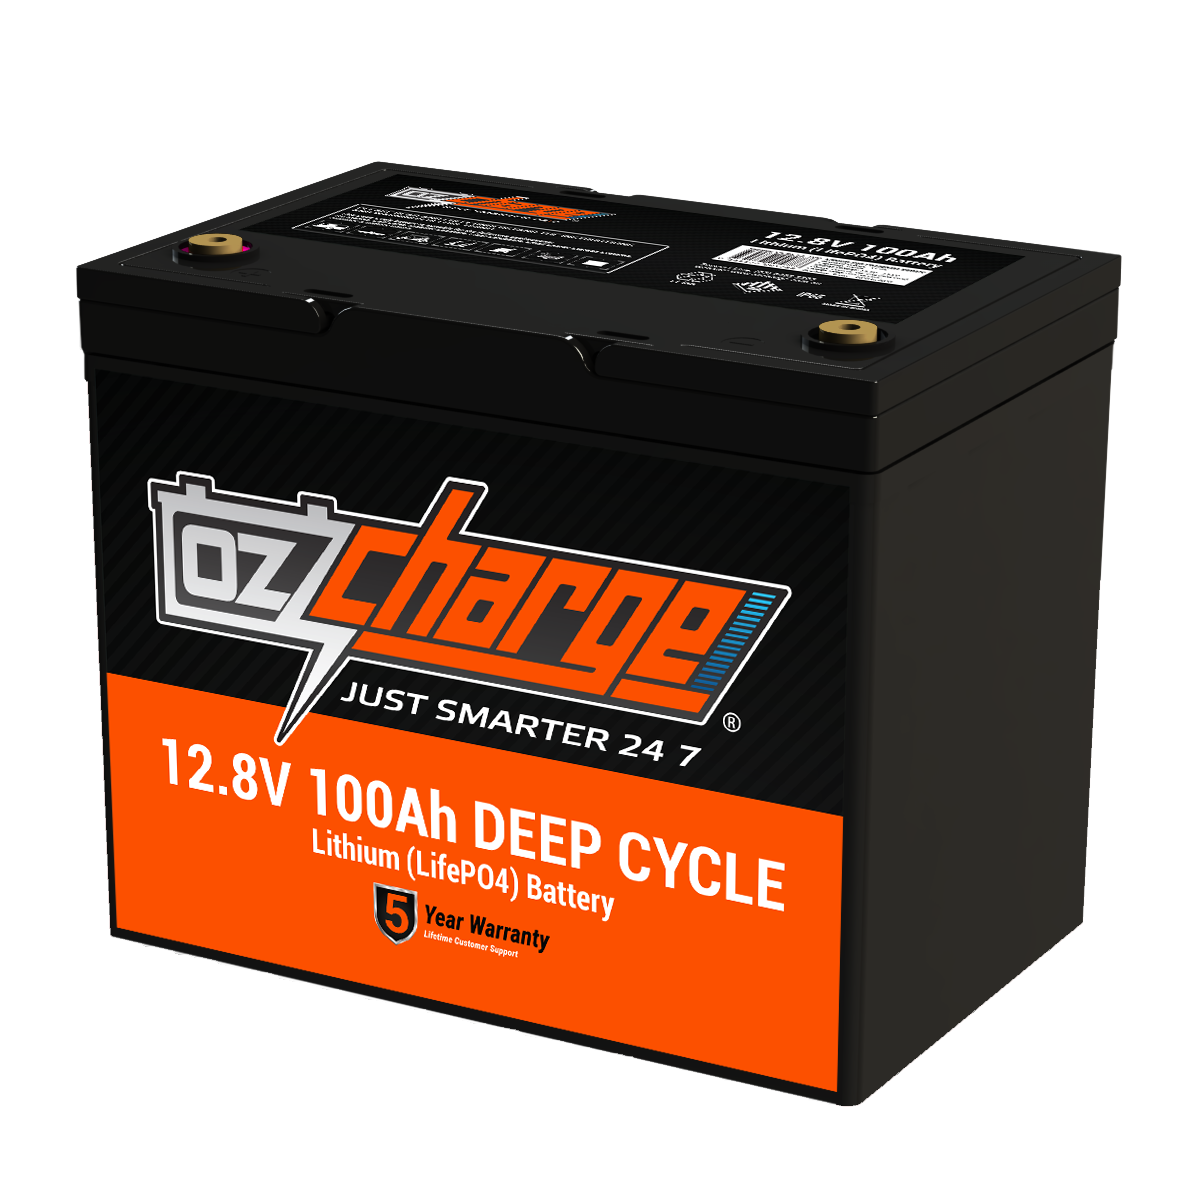 12V 100Ah Lithium LifePO4 Deep Cycle Battery